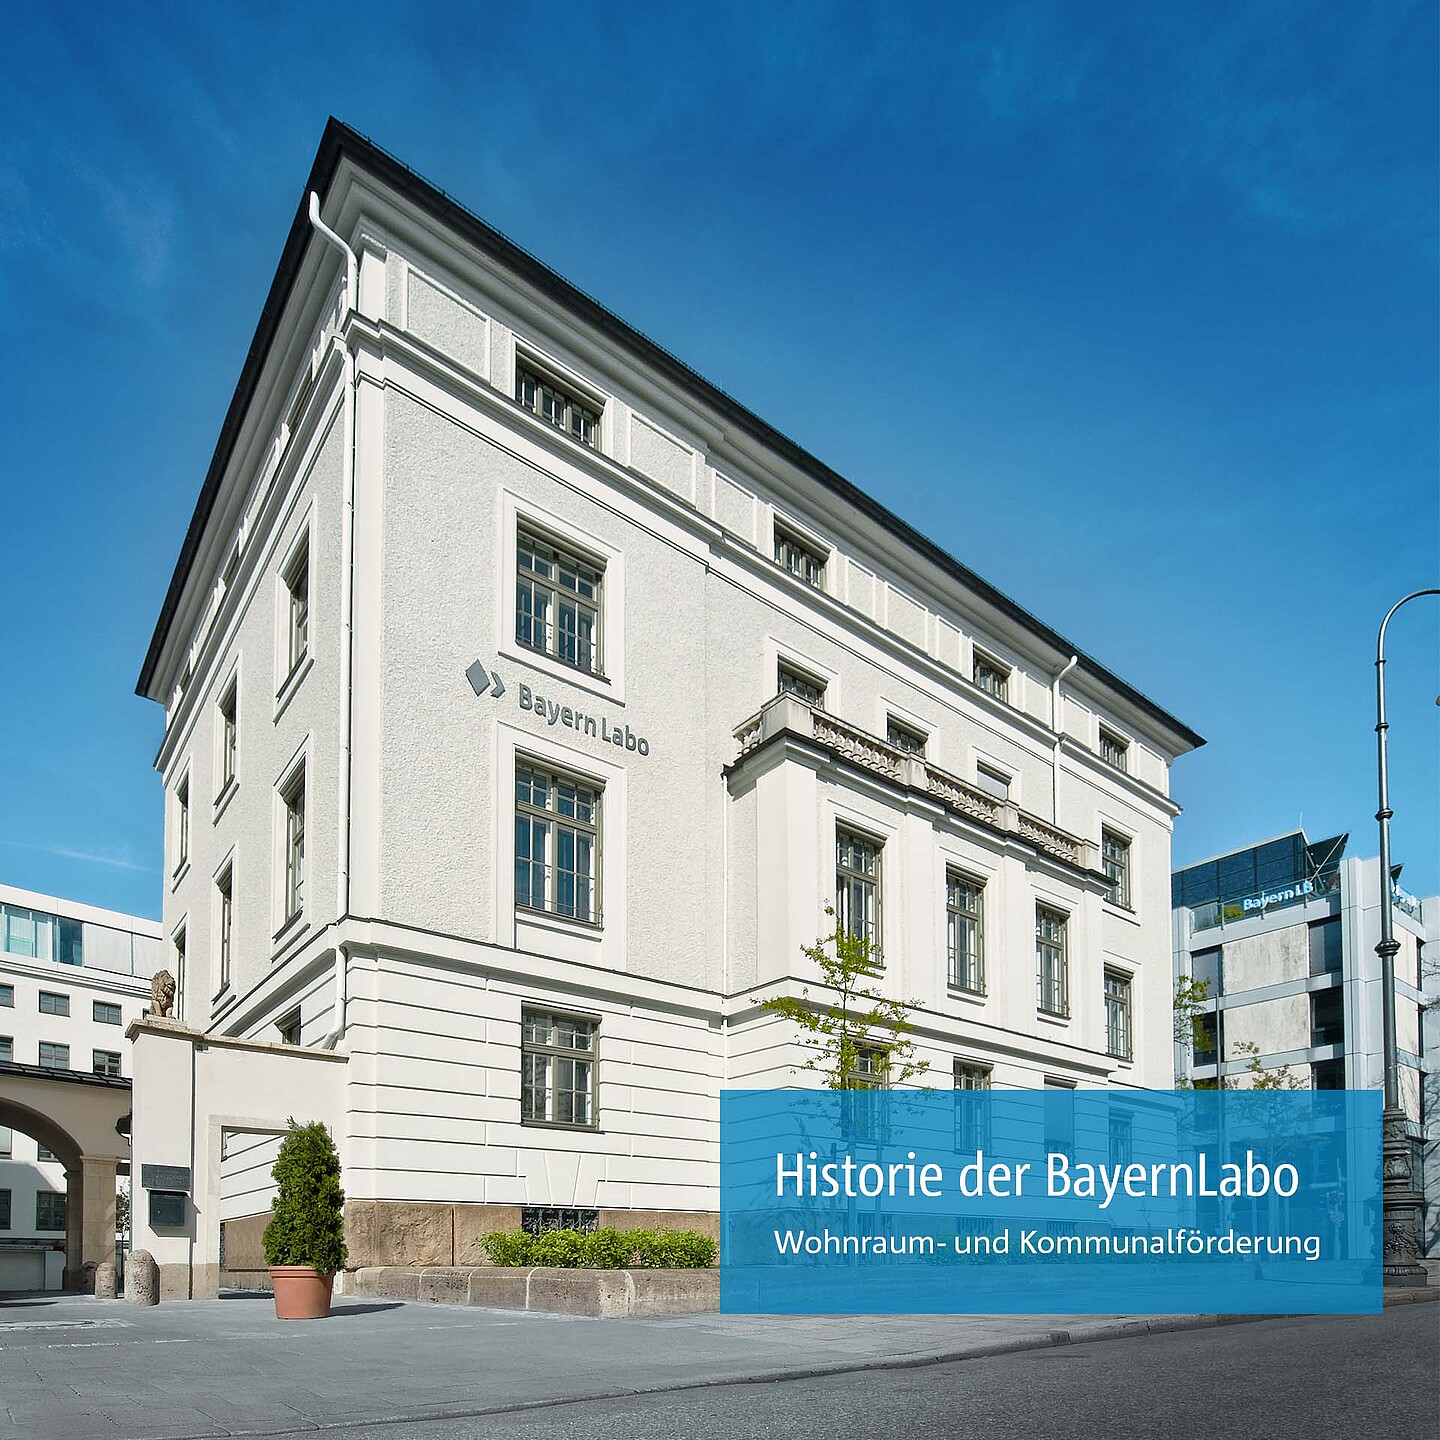 Die Historie der BayernLabo als Förderinstitut für Wohnraum- und Kommunalförderung.